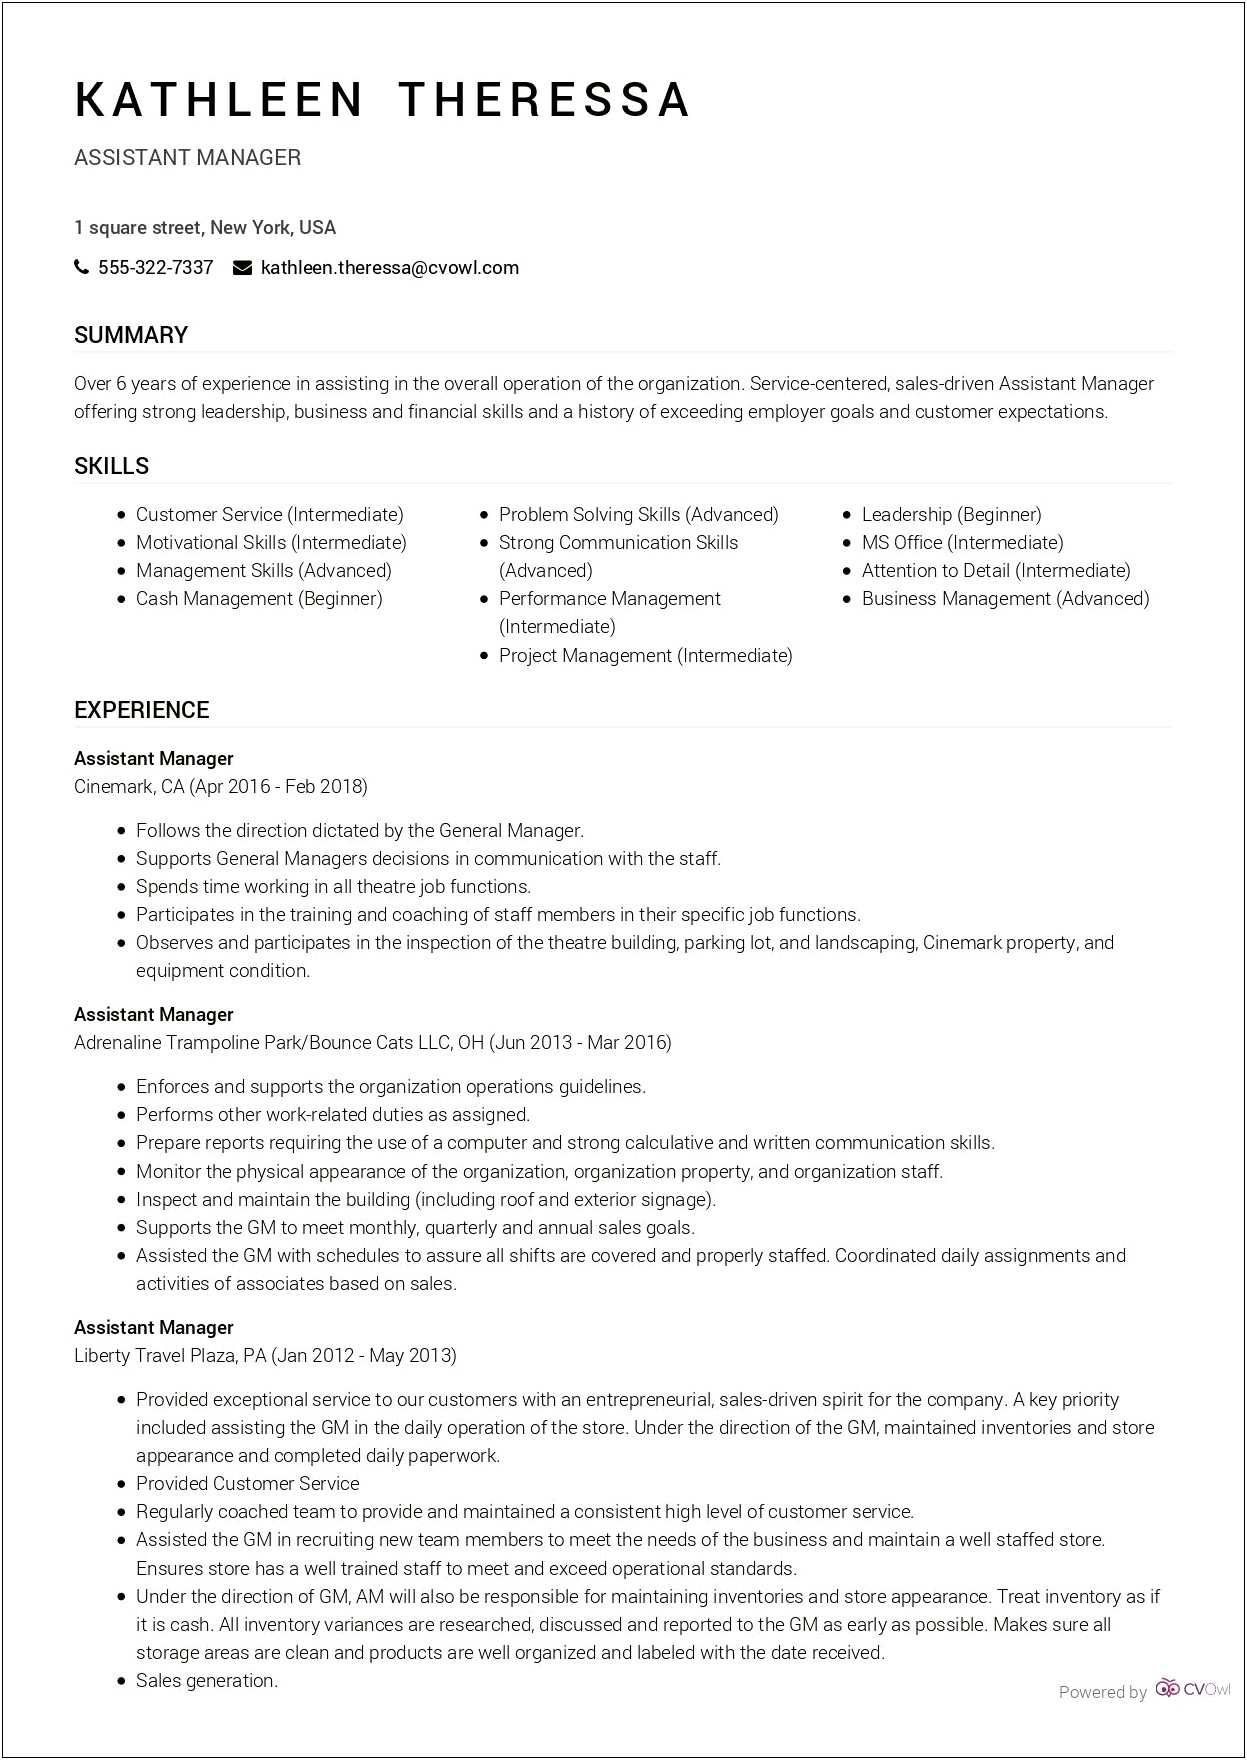 Assistant Manager Job Description Resume Retail